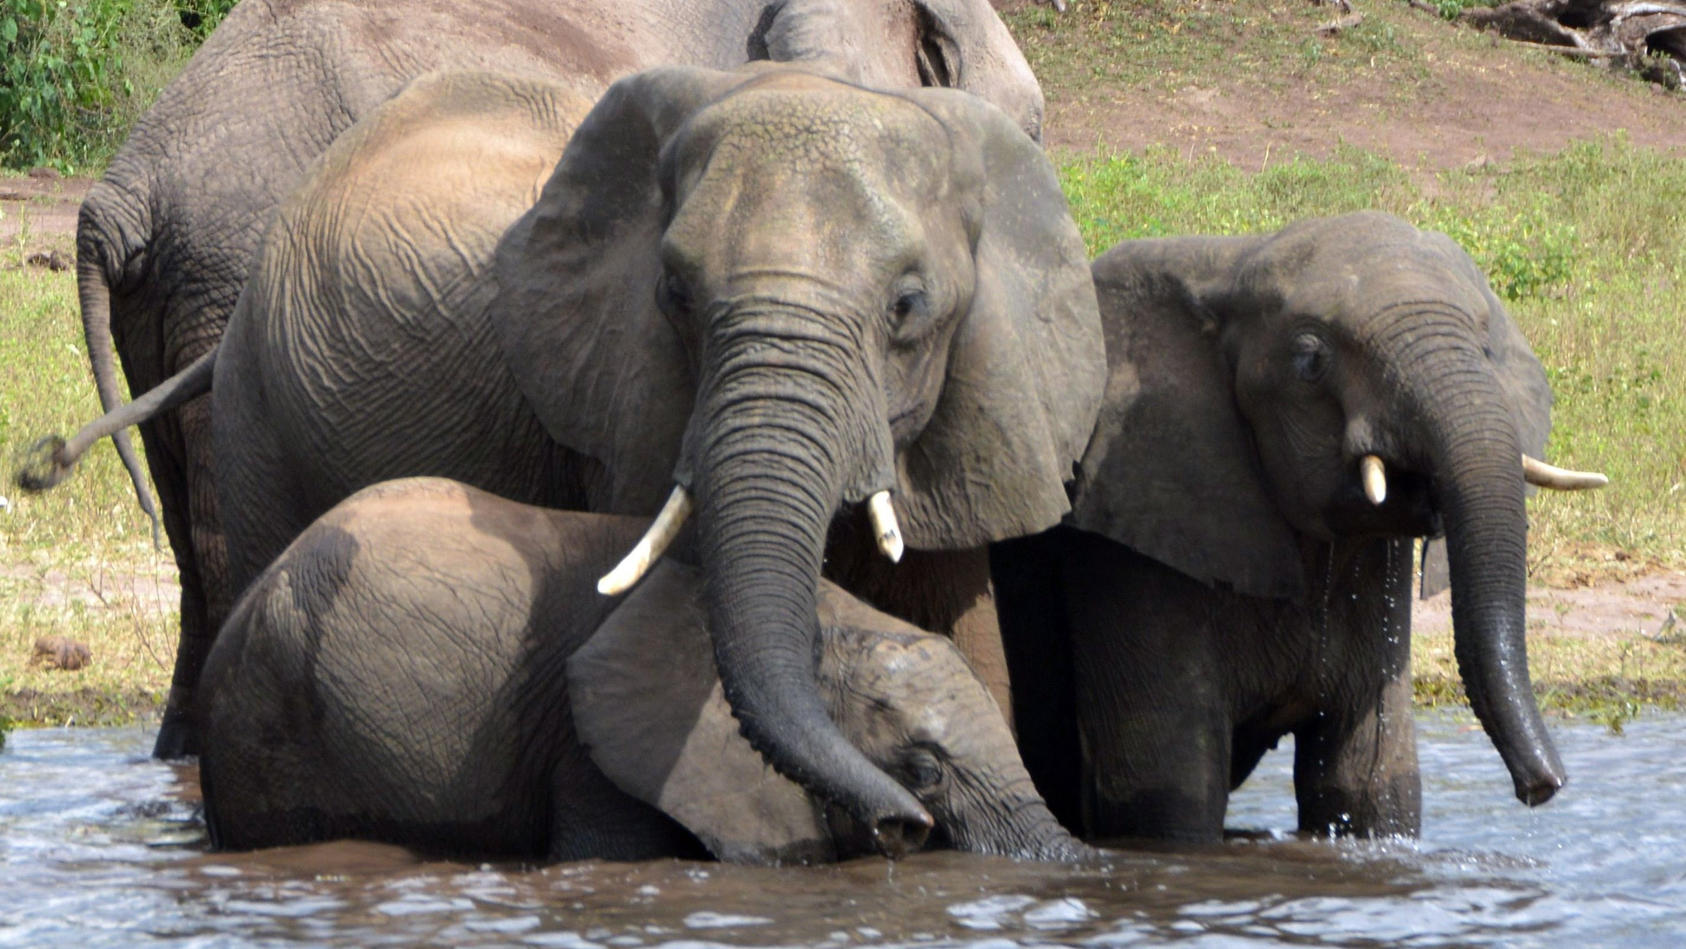 ARCHIV - 03.03.2013, Botsuana, Chobe-Nationalpark: Elefanten trinken Wasser im Chobe-Nationalpark. (zu dpa "Botsuana erteilte hunderte Lizenzen für Elefanten-Jagd") Foto: Charmaine Noronha/AP/dpa +++ dpa-Bildfunk +++